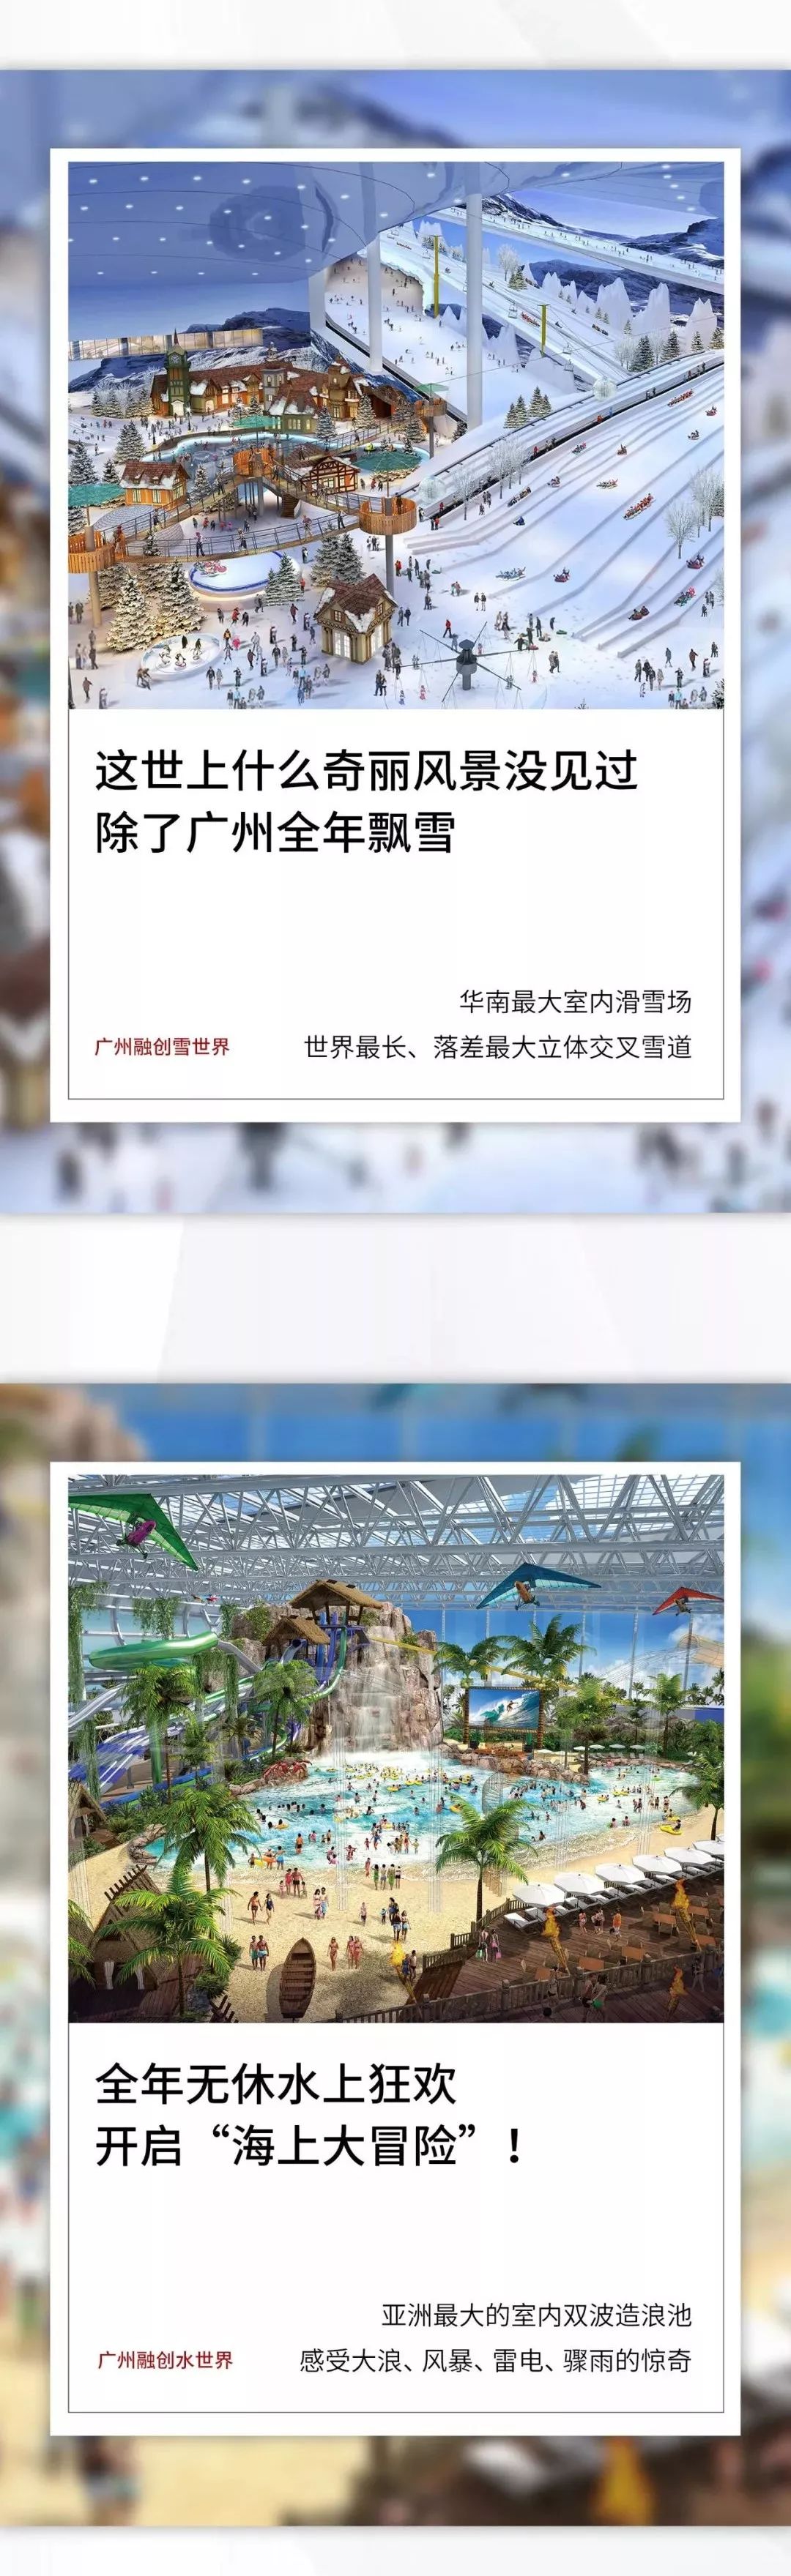 广州融创乐园票价正式公布,59天后来广州享最潮流的欢乐体验!图片